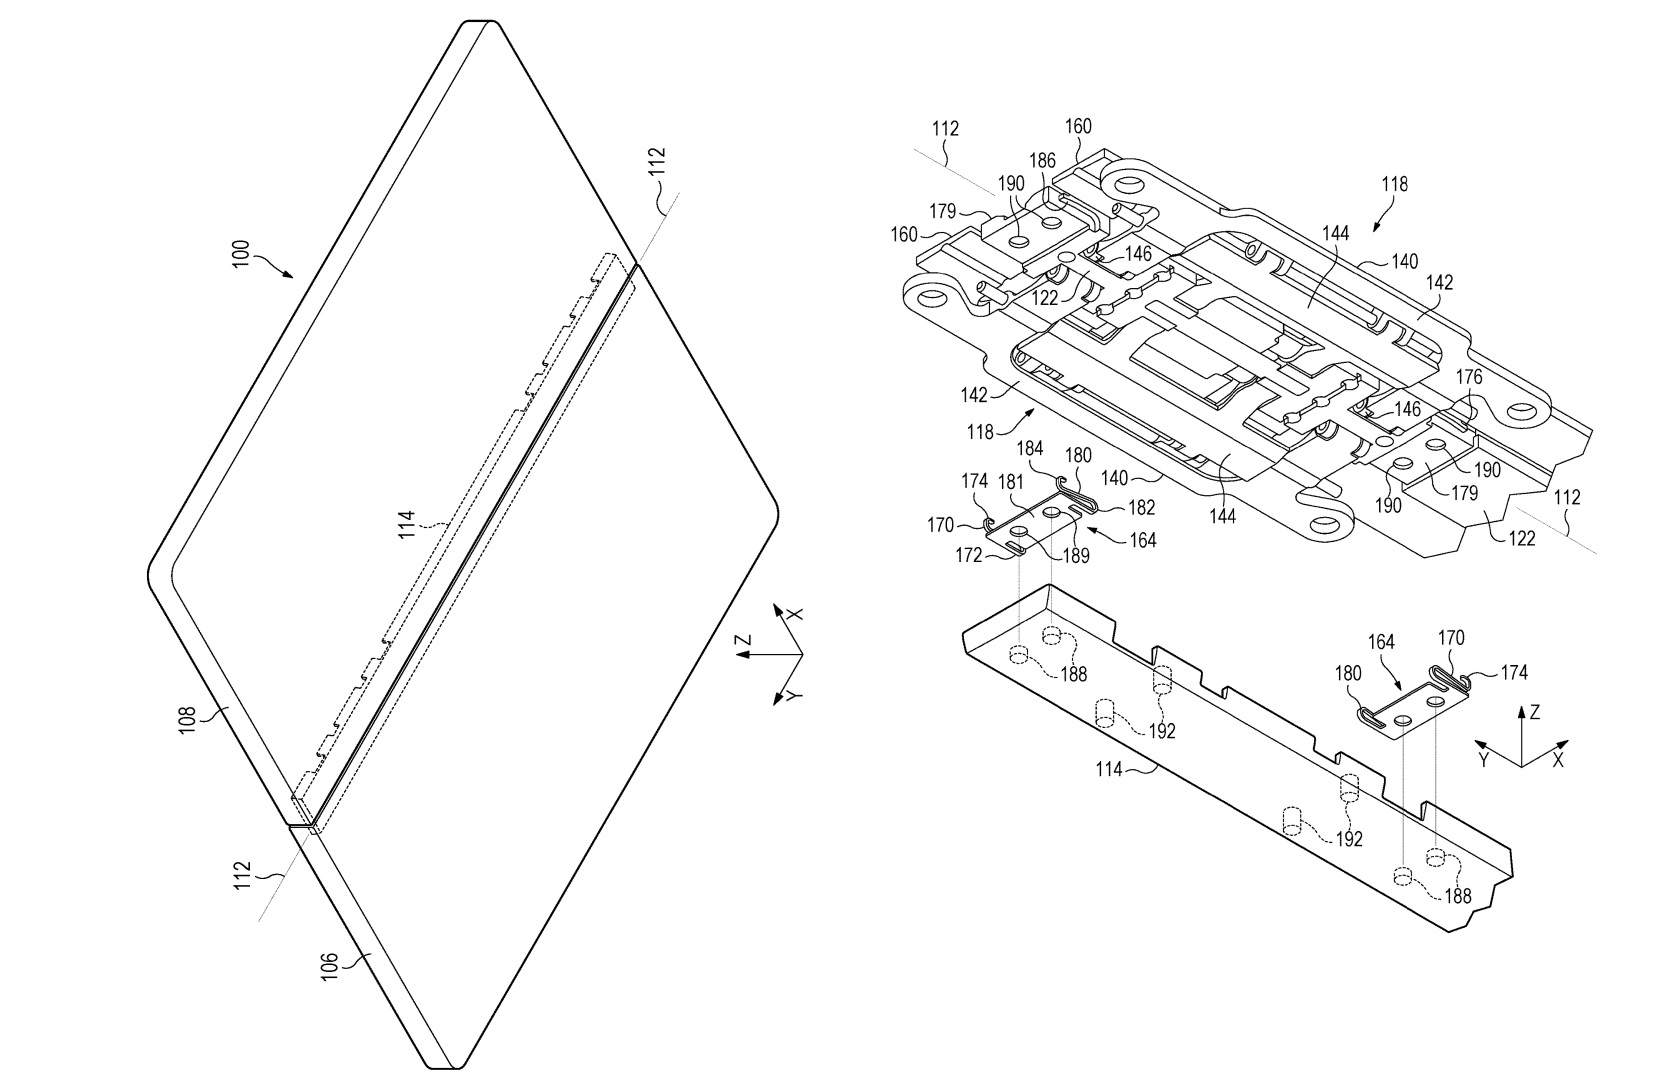 Patente do Surface Phone com tampa de placa única